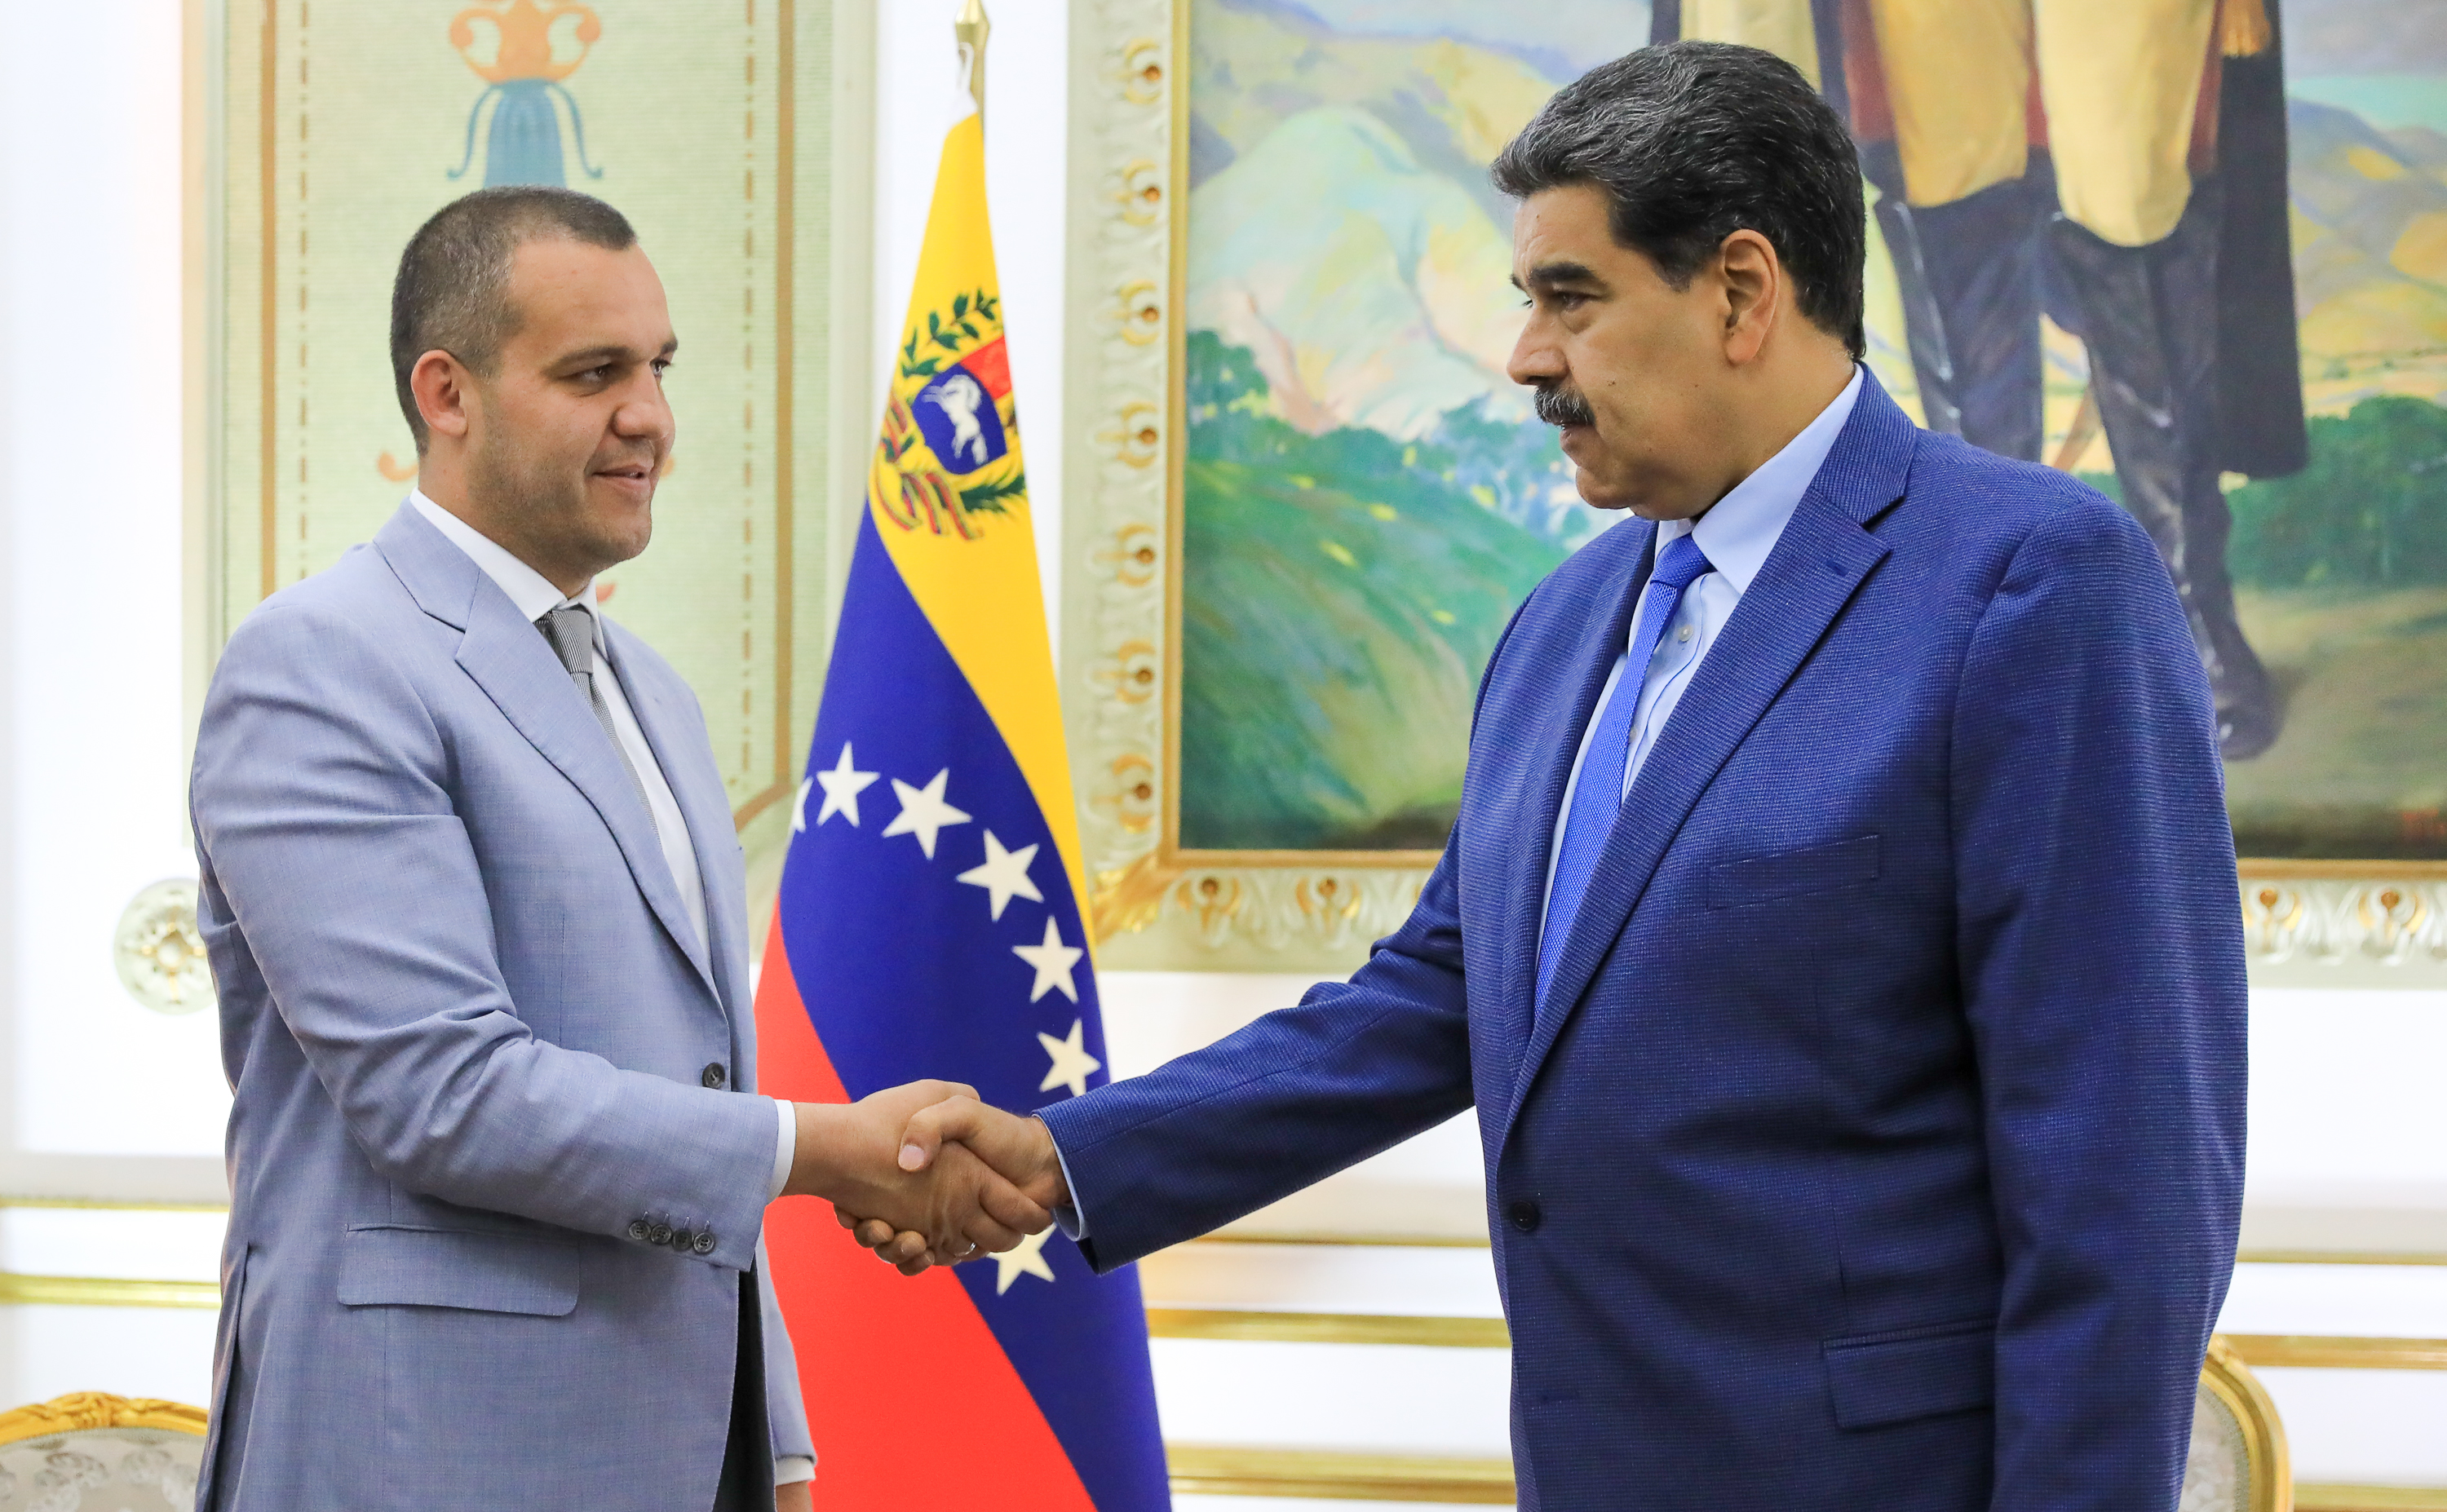 Presidente de la IBA, Umar Kremlev, recibido por el presidente de Venezuela, Nicolás Maduro Moros, en Caracas – IBA